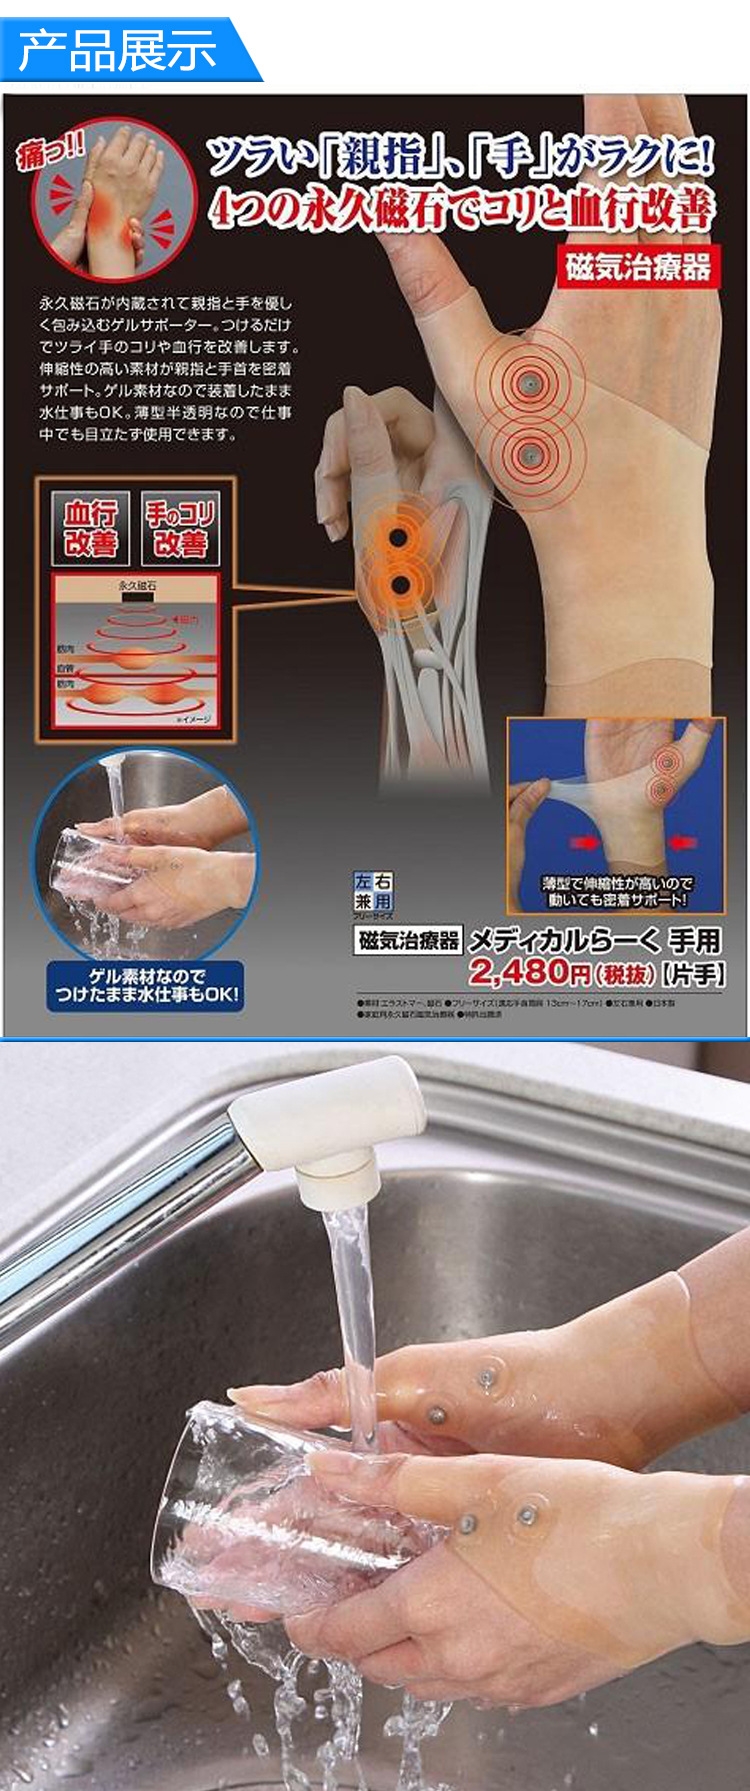 JHS杰恆社 日本制緩解腱鞘炎滑鼠手手指手腕扭傷 固定護腕套一枚男女兼用abe34